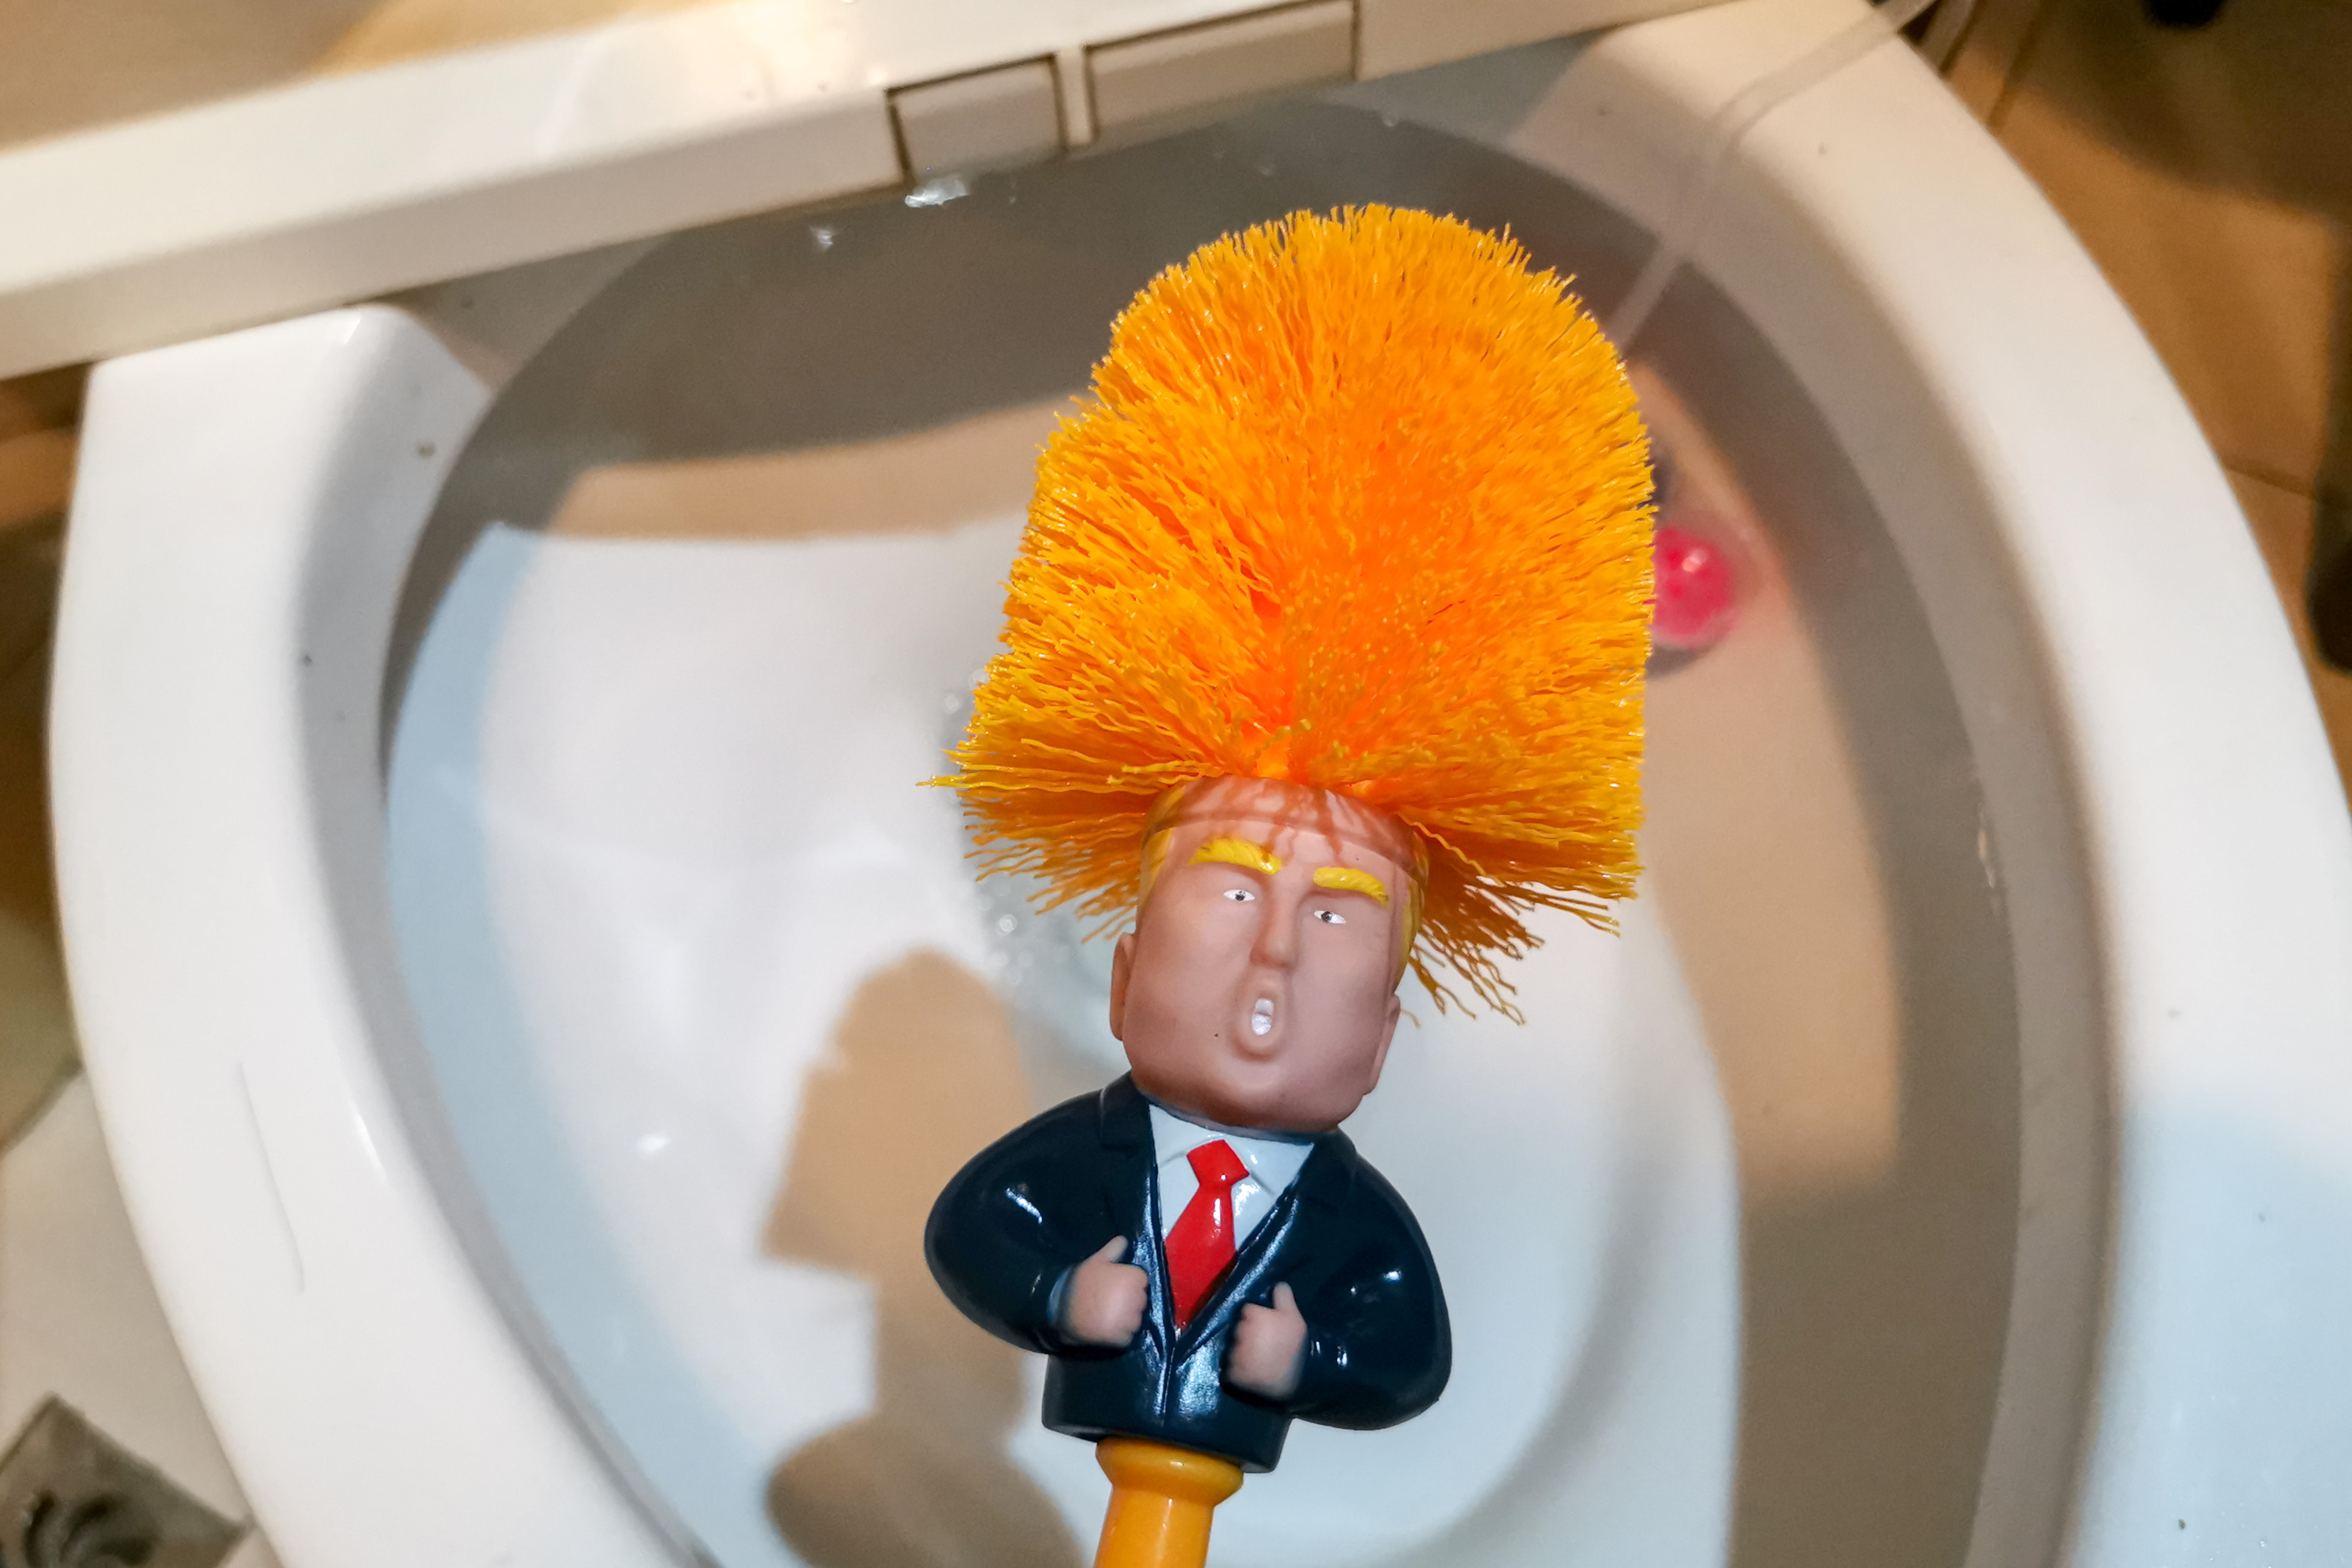 Elképesztő találmány: Donald Trump fejével mostantól kefélni is lehet,  legalábbis, ha WC-ről van szó - Blikk